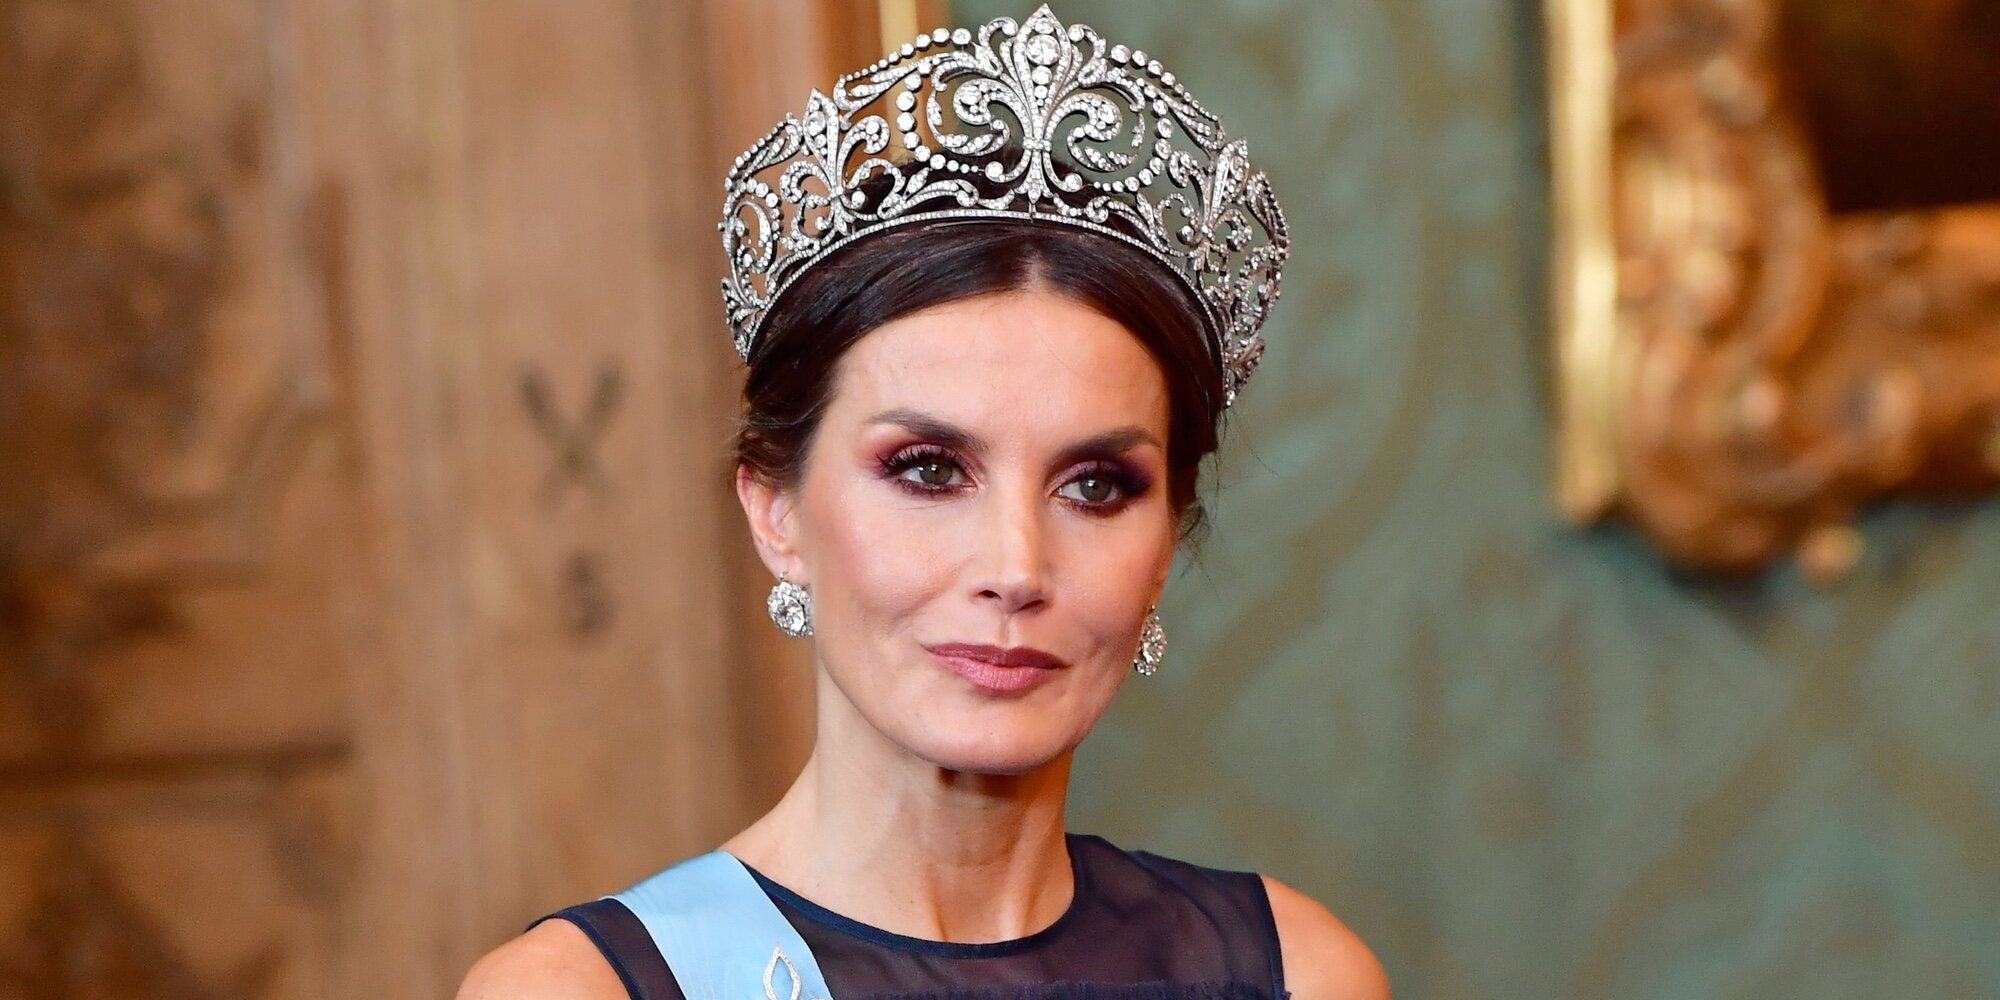 La espectacularidad de la Reina Letizia en la cena de gala en Suecia: de la tiara de las tiaras a la curiosidad de su vestido